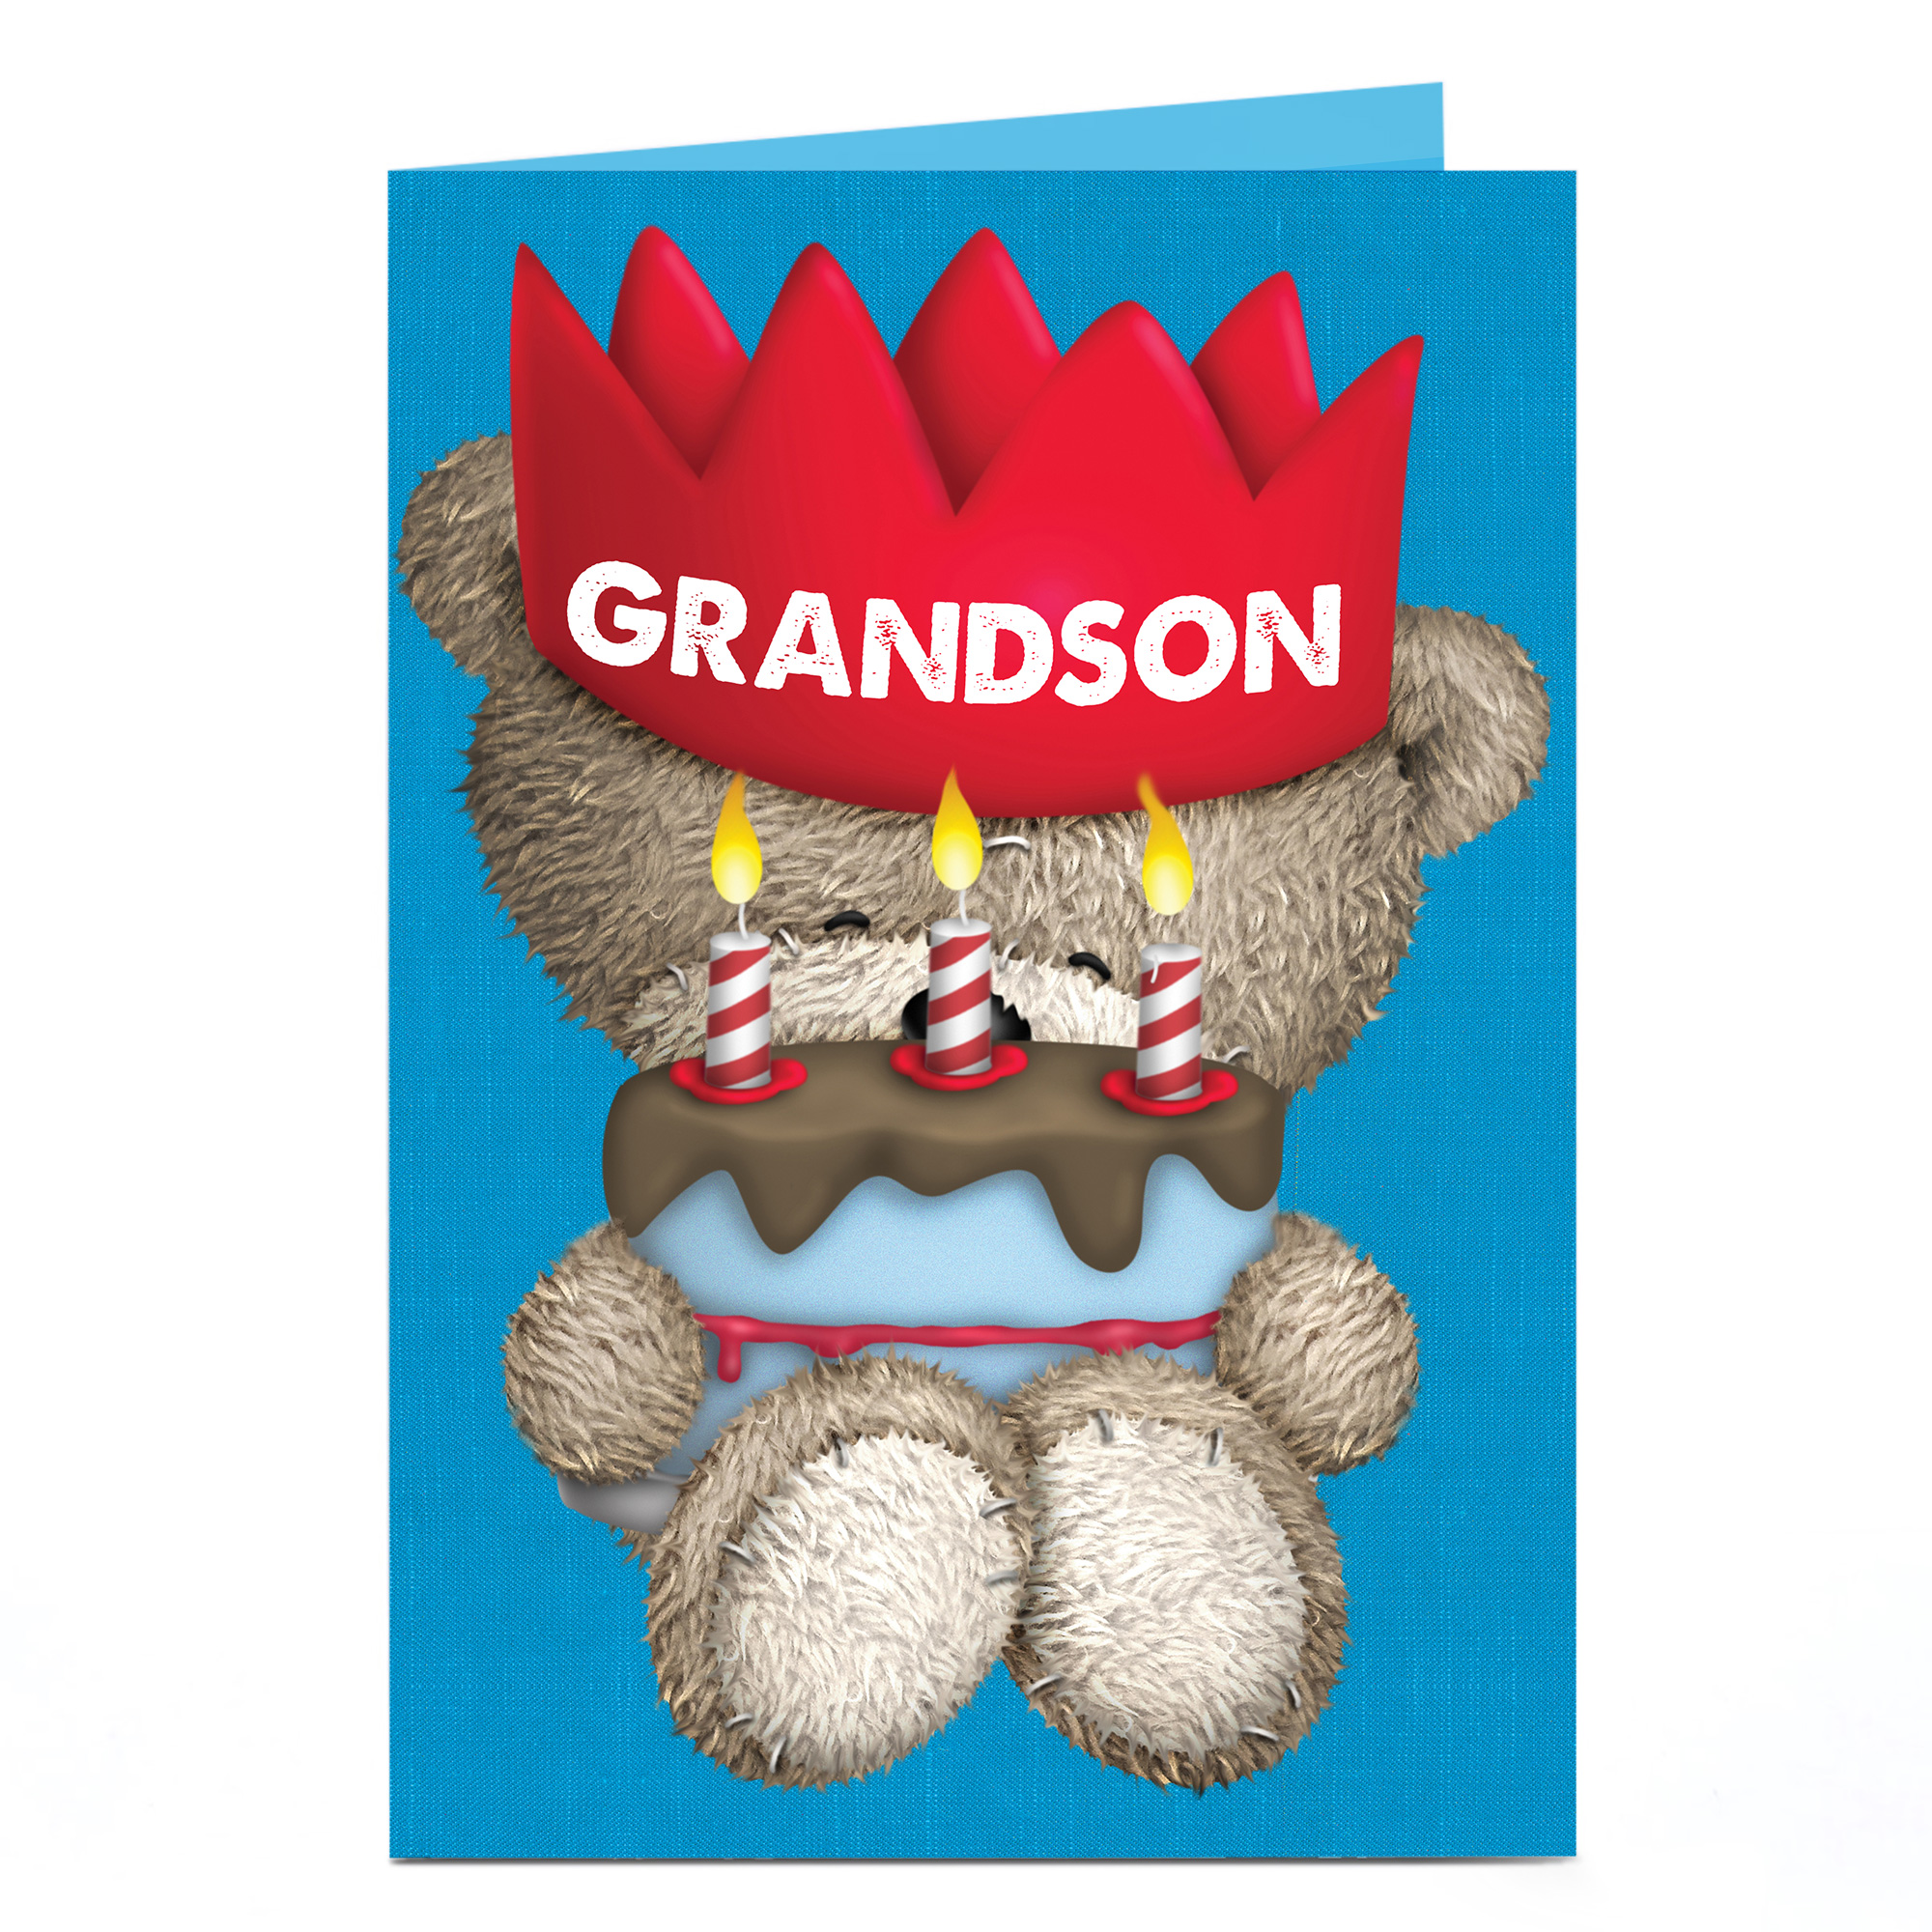 Personalised Hugs Birthday Card - Red Crown [Grandson]